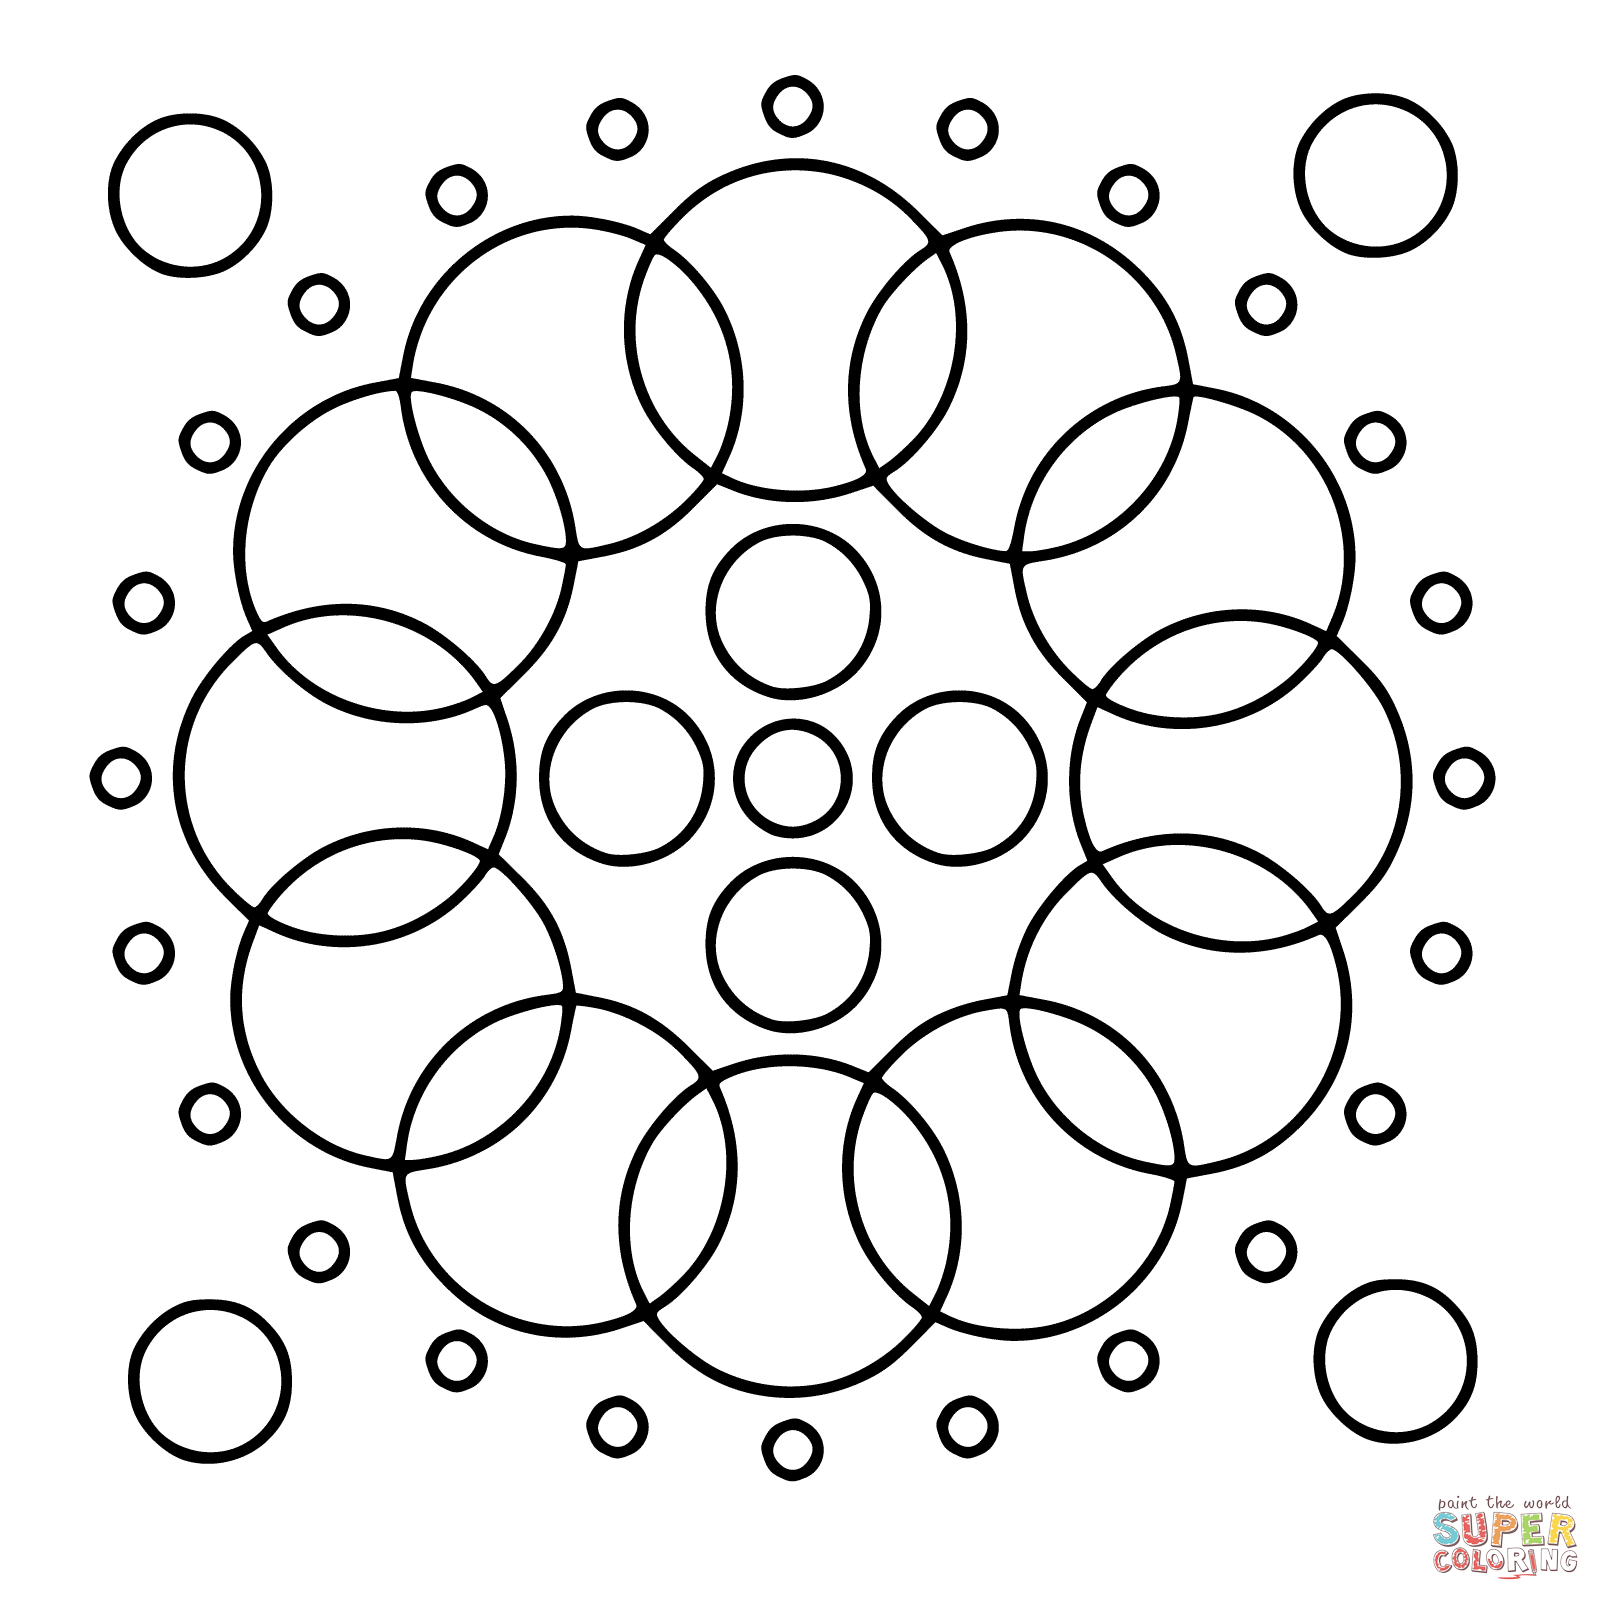 Circle Mandalas Coloring Pages | Free Coloring Pages - Free Printable Mandala Coloring Pages